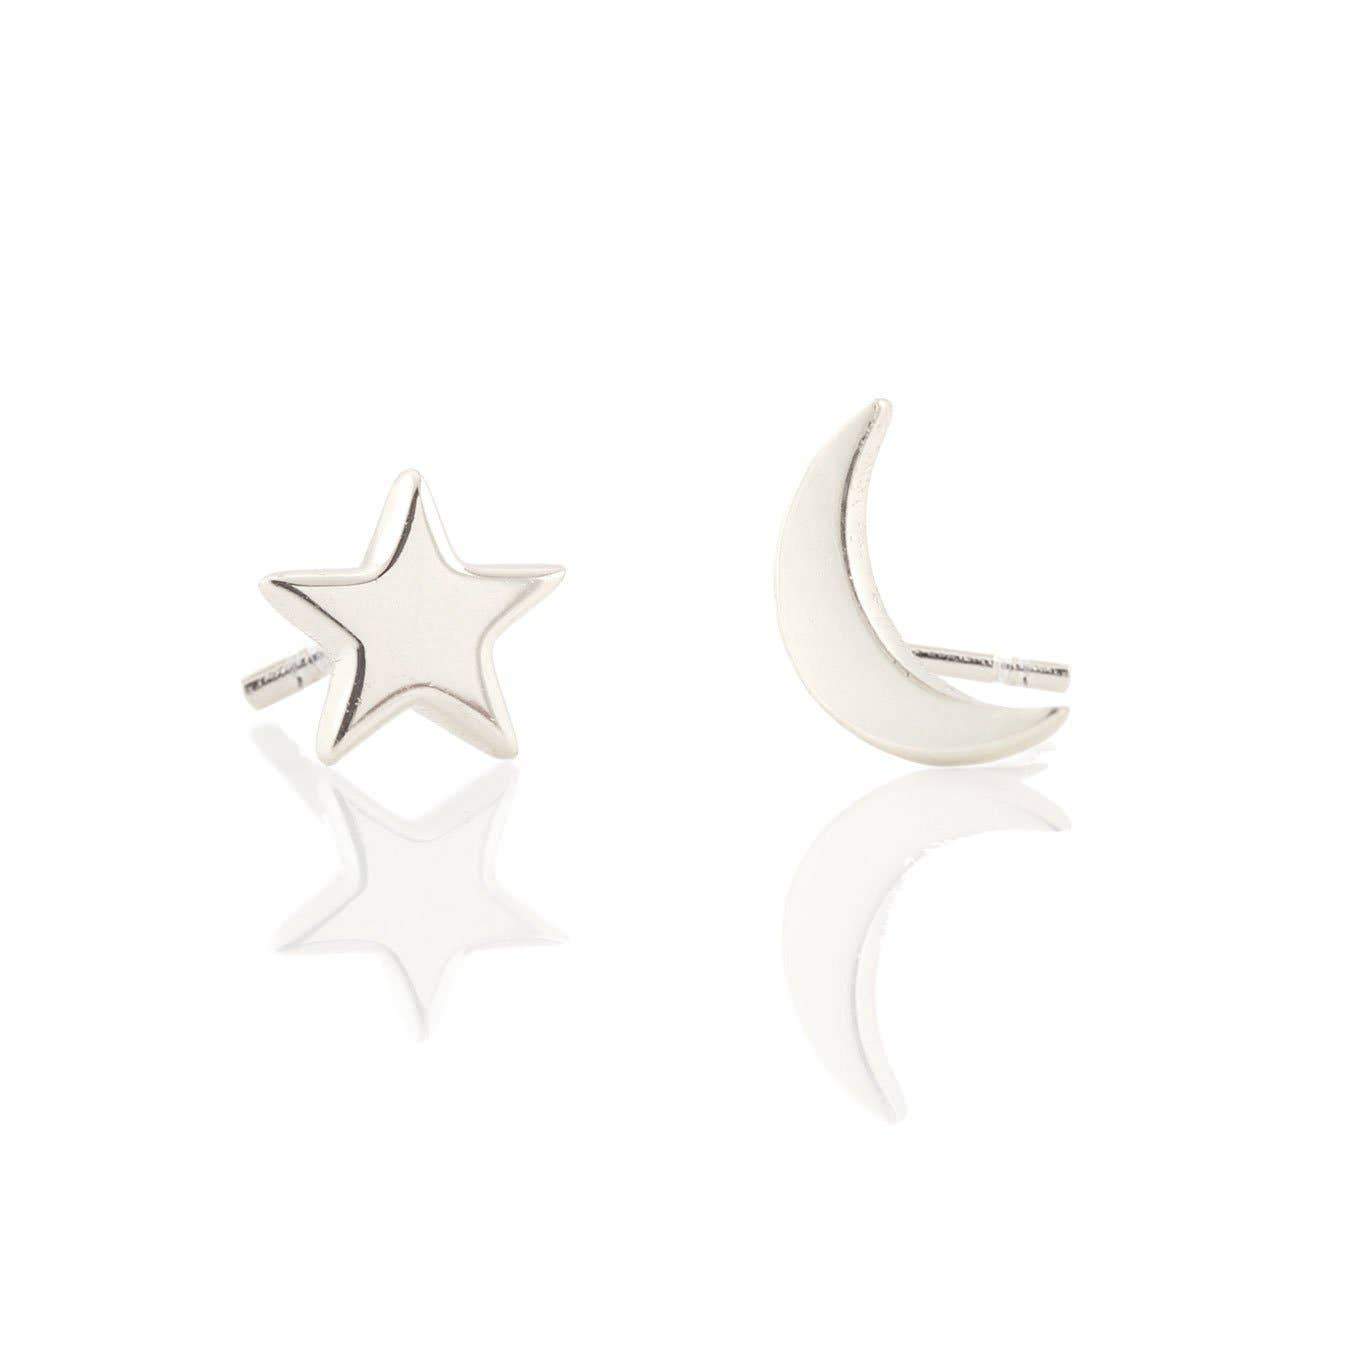 Star & Moon Stud Earrings Earrings Kris Nations Sterling Silver 